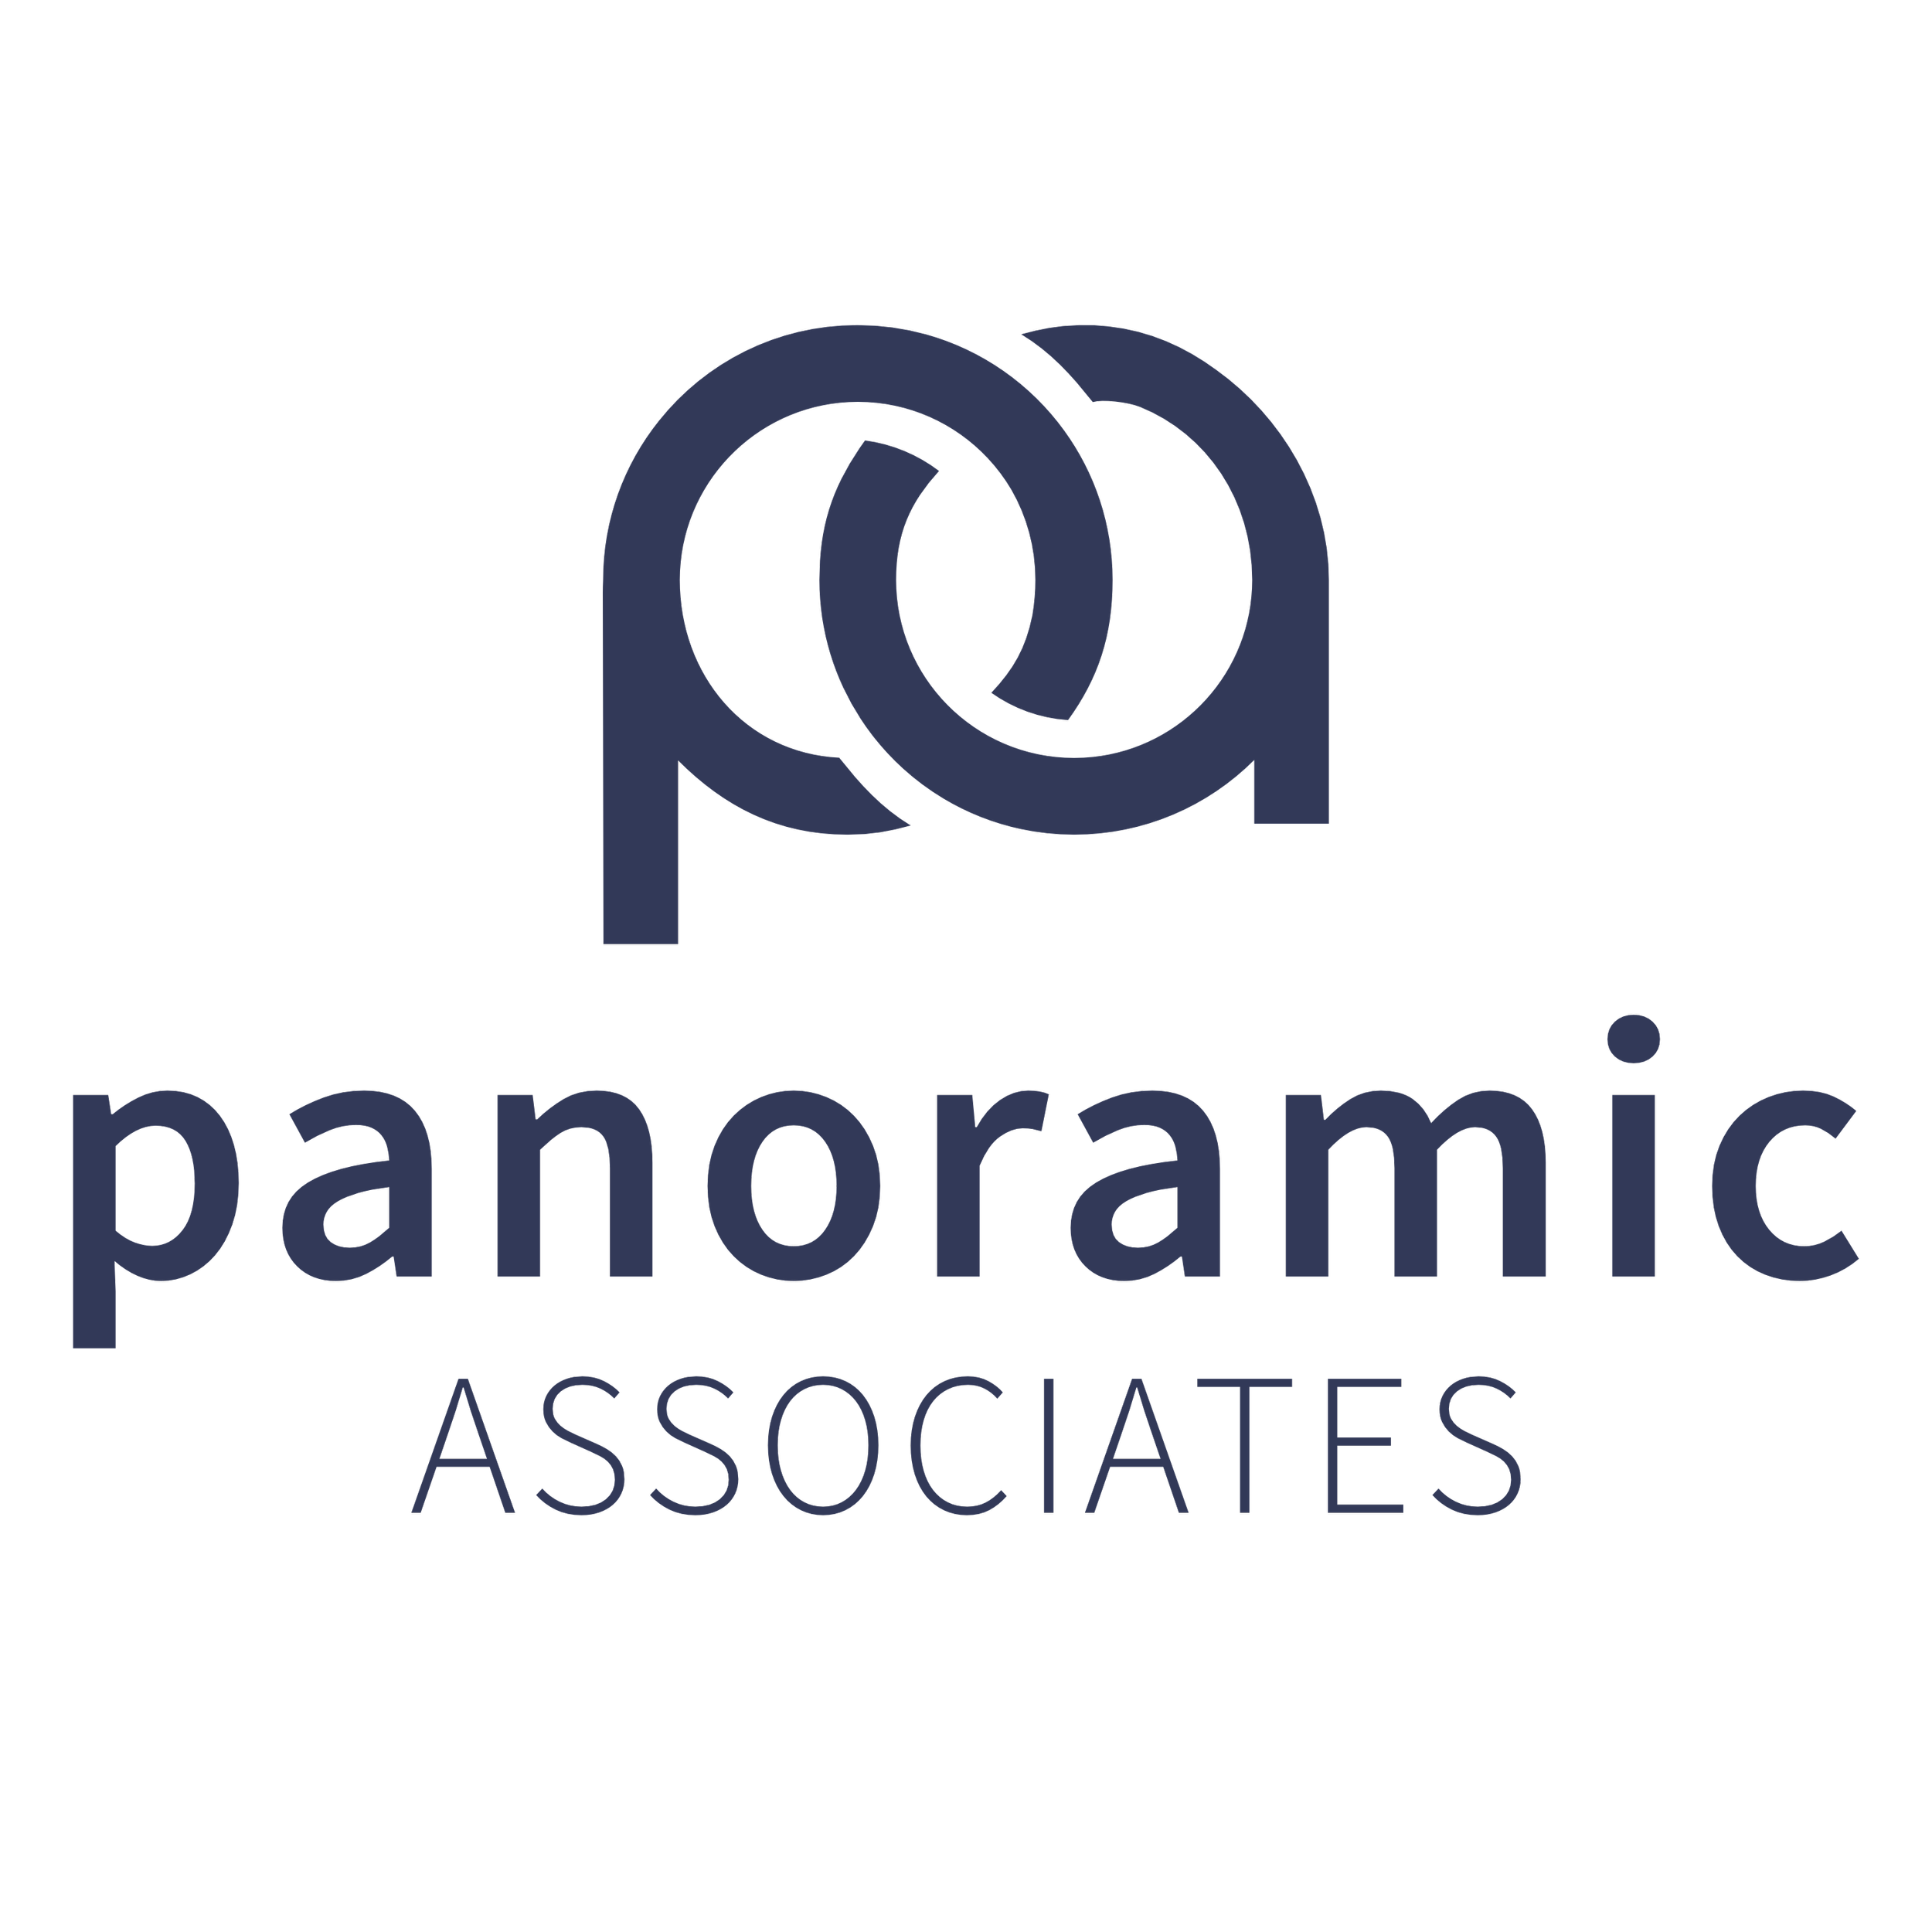 Panoramic Associates